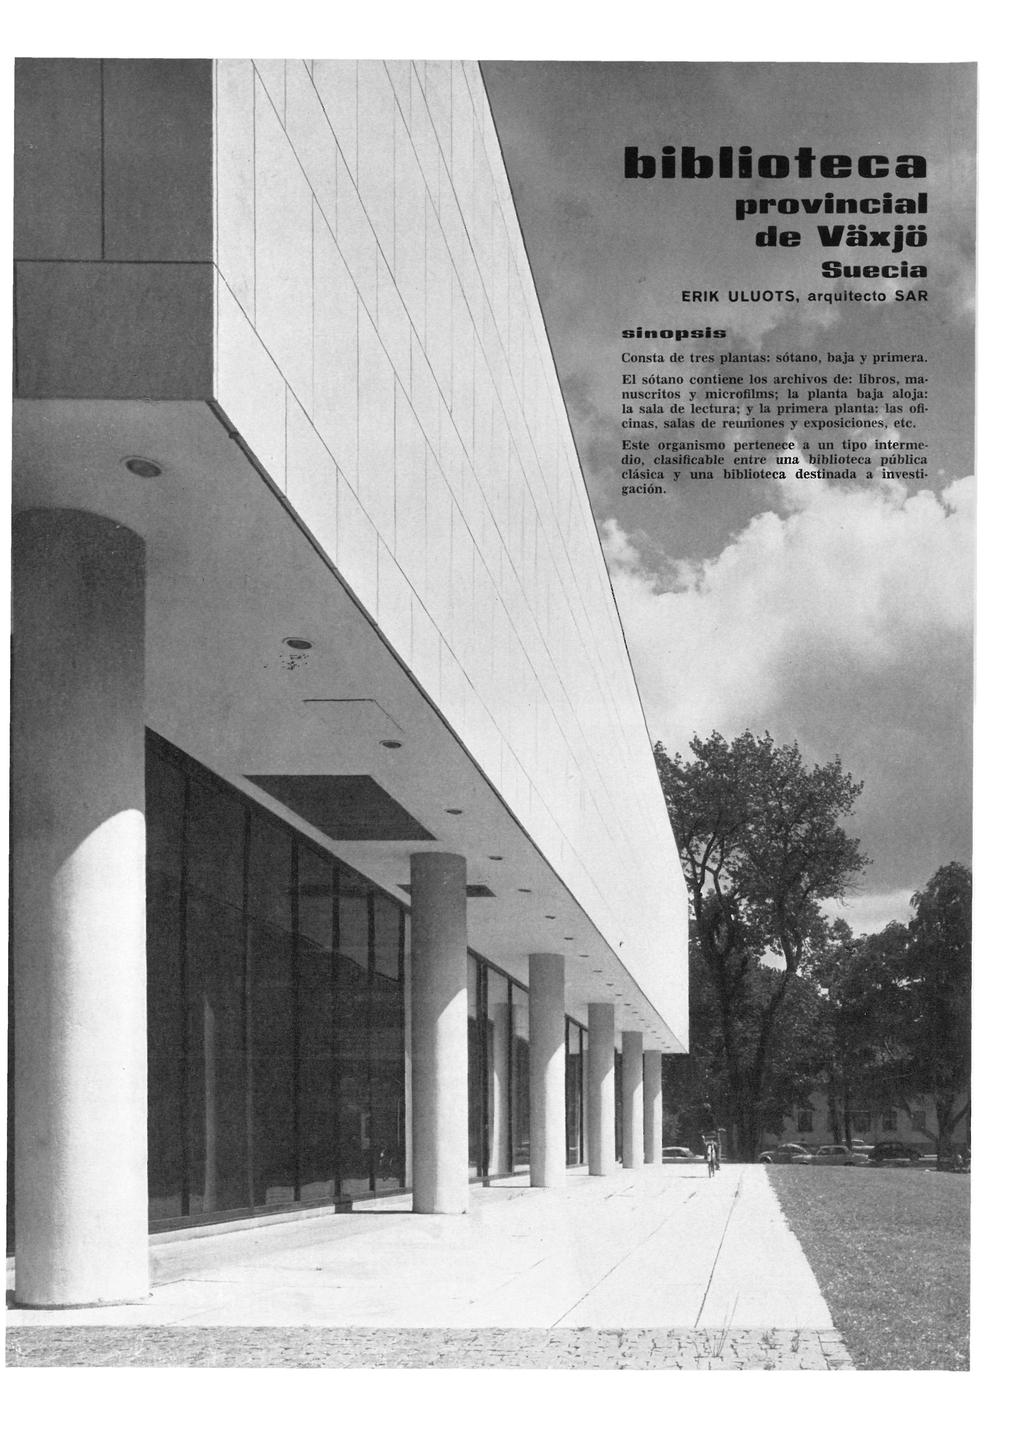 Informes de la Construcción Vol. 21, nº 201 Junio de 1968 biblioteca provincial de Uâxjo Suecia ERIK U L U O T S, arquitecto S A R sinopsis Consta de tres plantas: sótano, baja y primera.